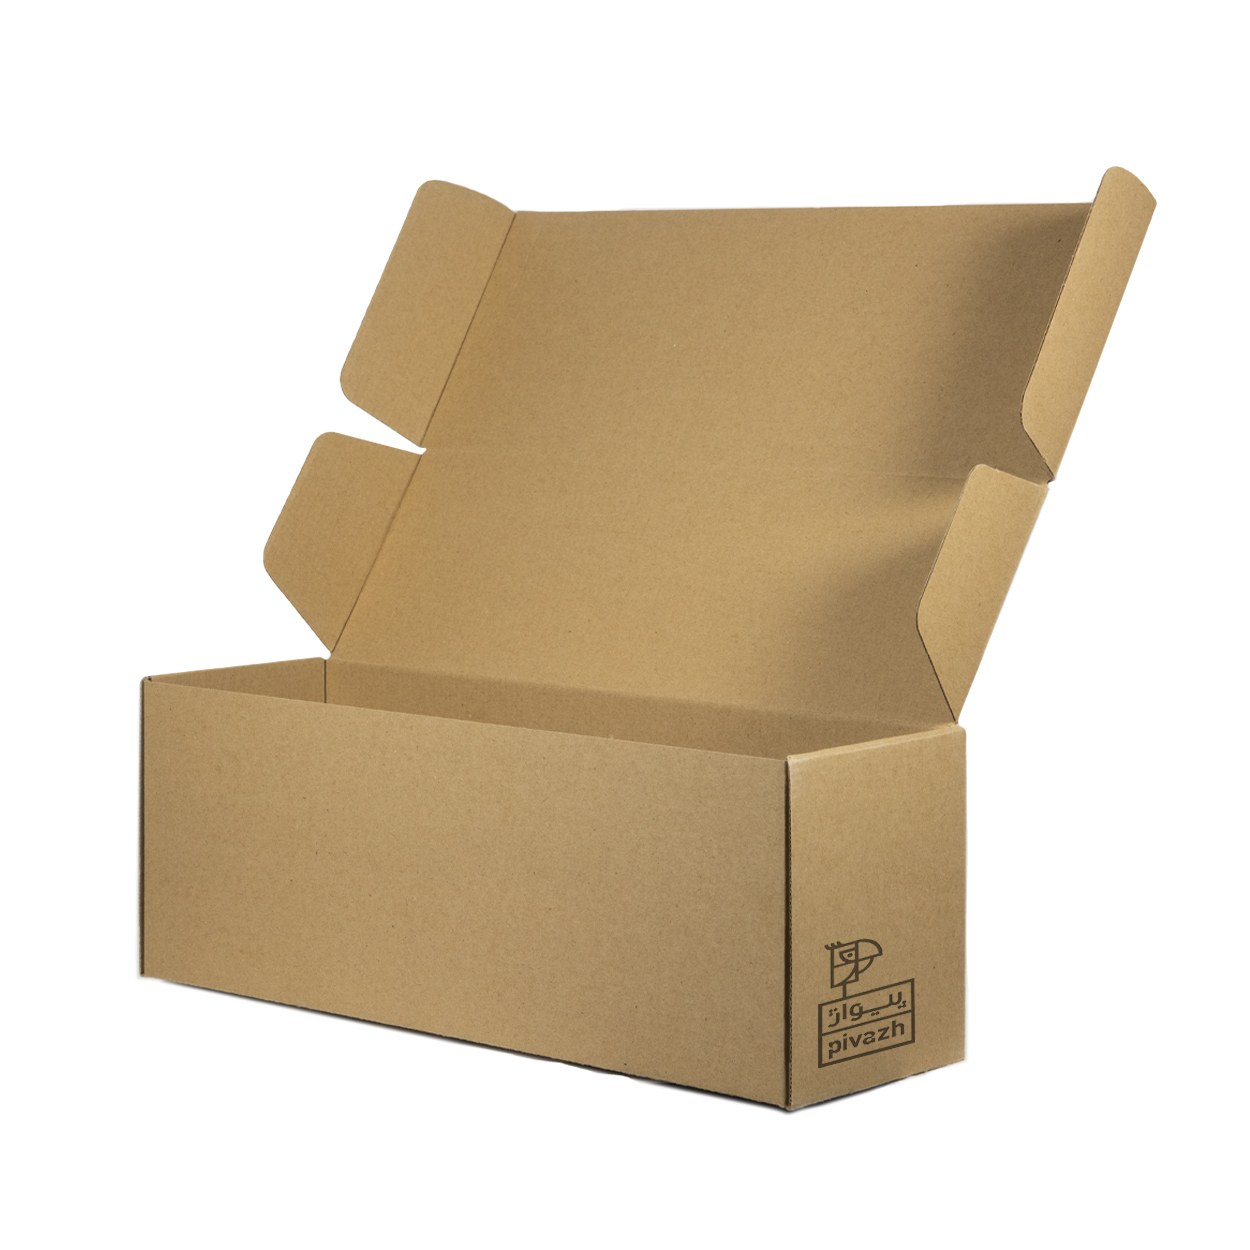 جعبه بسته بندی پیواژ مدل کیبوردی K-040 بسته 20 عددی